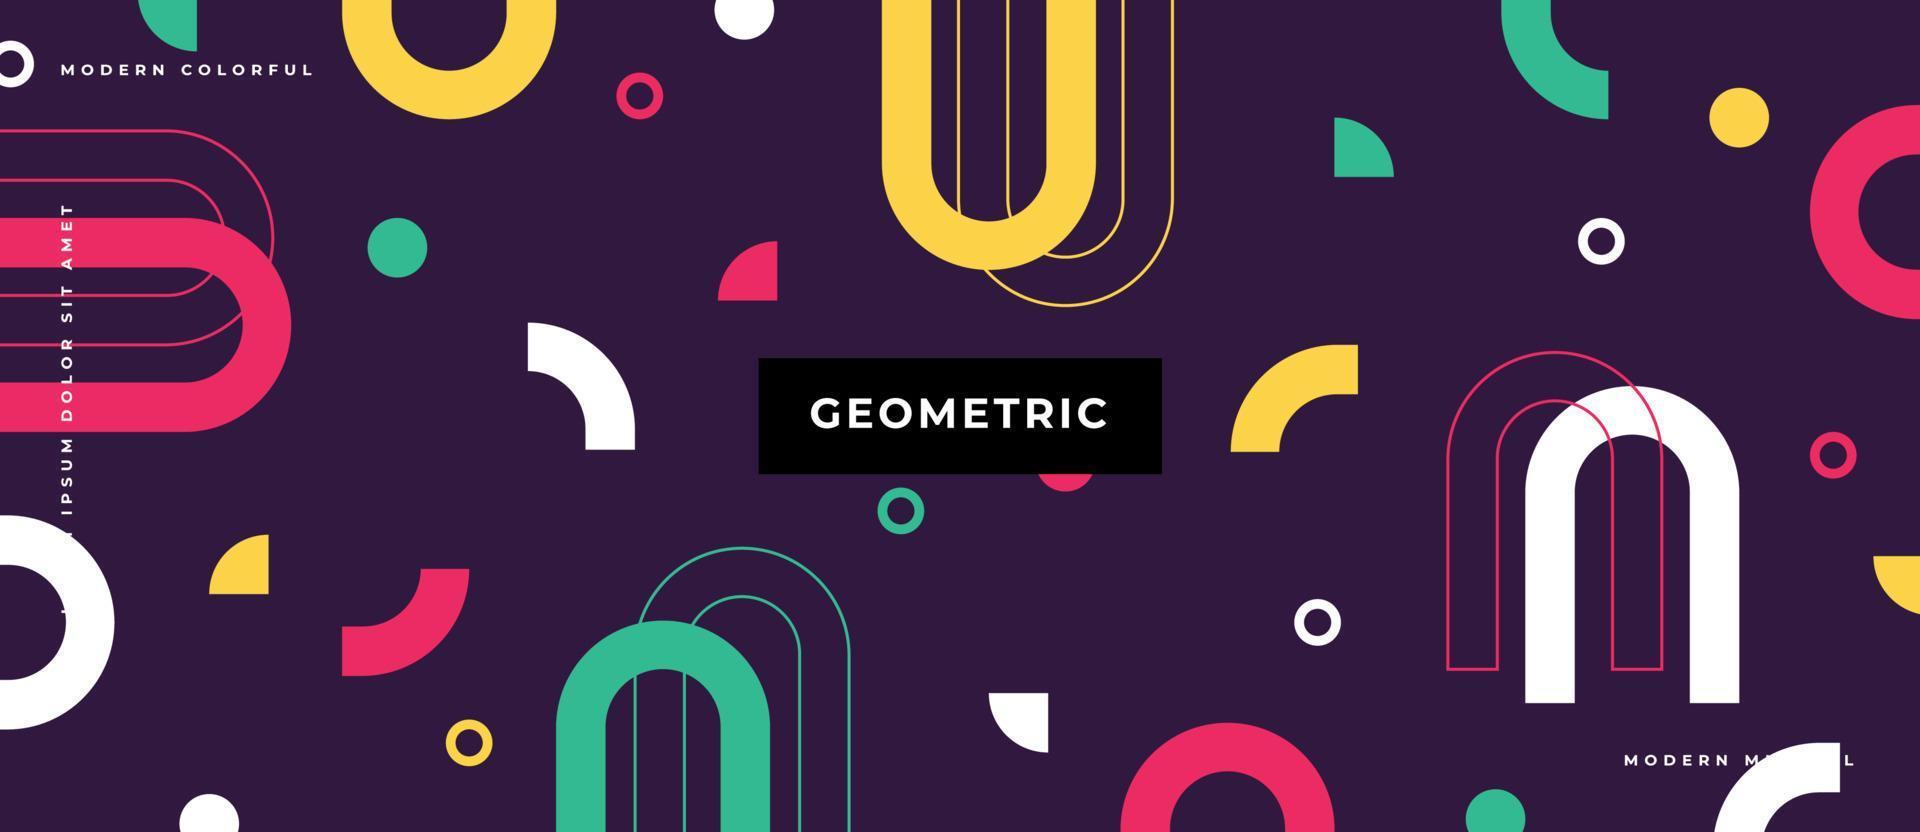 Círculo colorido patrón geométrico patrón de estilo de Memphis con formas simples versión cuadrada diseño de estilo plano ilustración vectorial aislado sobre fondo púrpura. vector